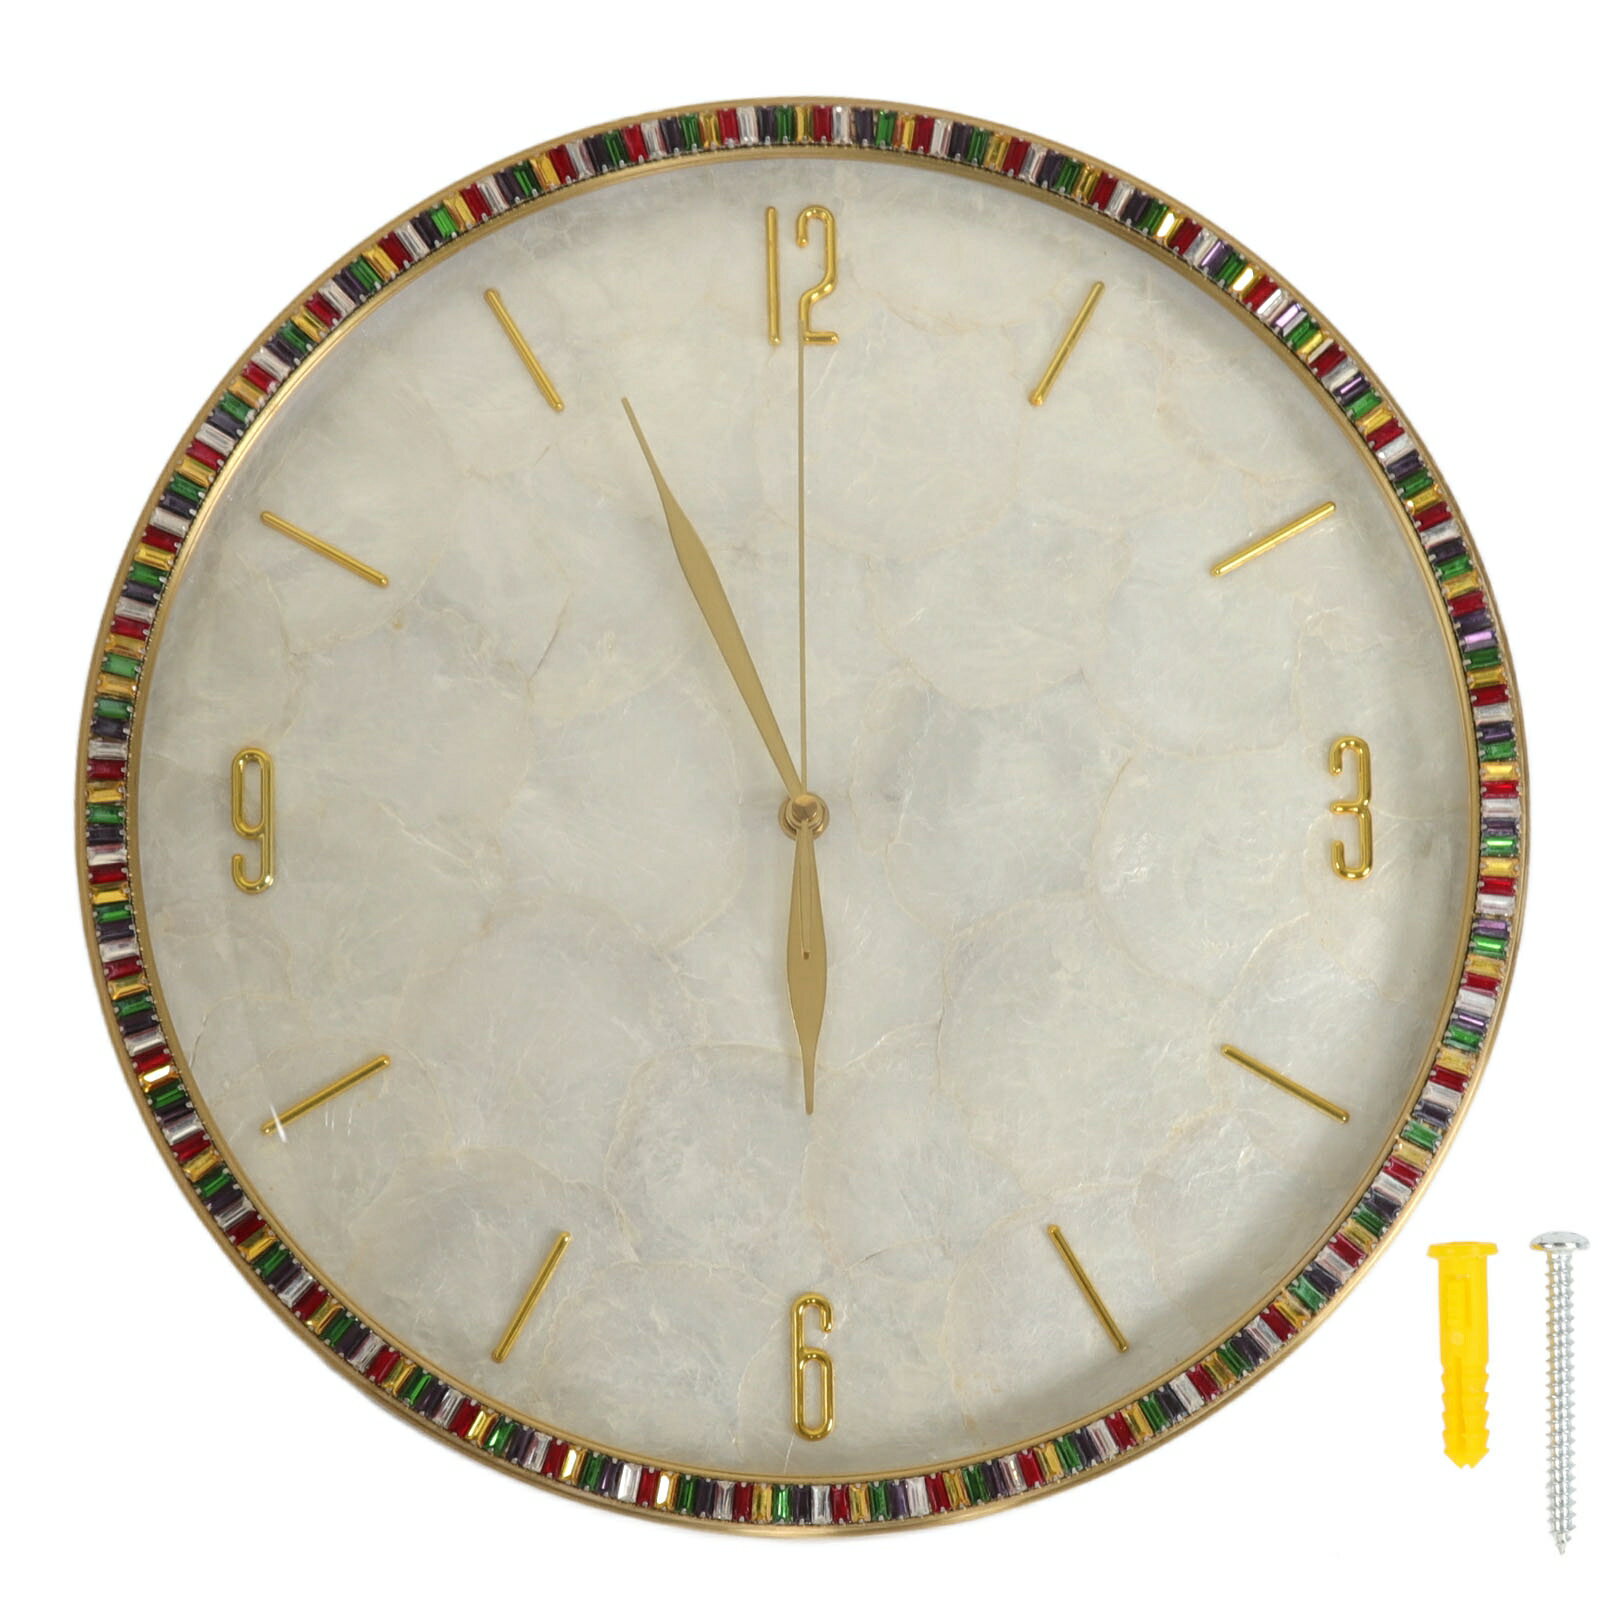 クォーツ時計 壁掛け時計 電池式 サイレント 北欧風 プレゼント 高温塗装 錆びなし 色あせなし 真鍮製 引越し祝い 新築お祝い ビジネス (直径 40cm / 15.7in)